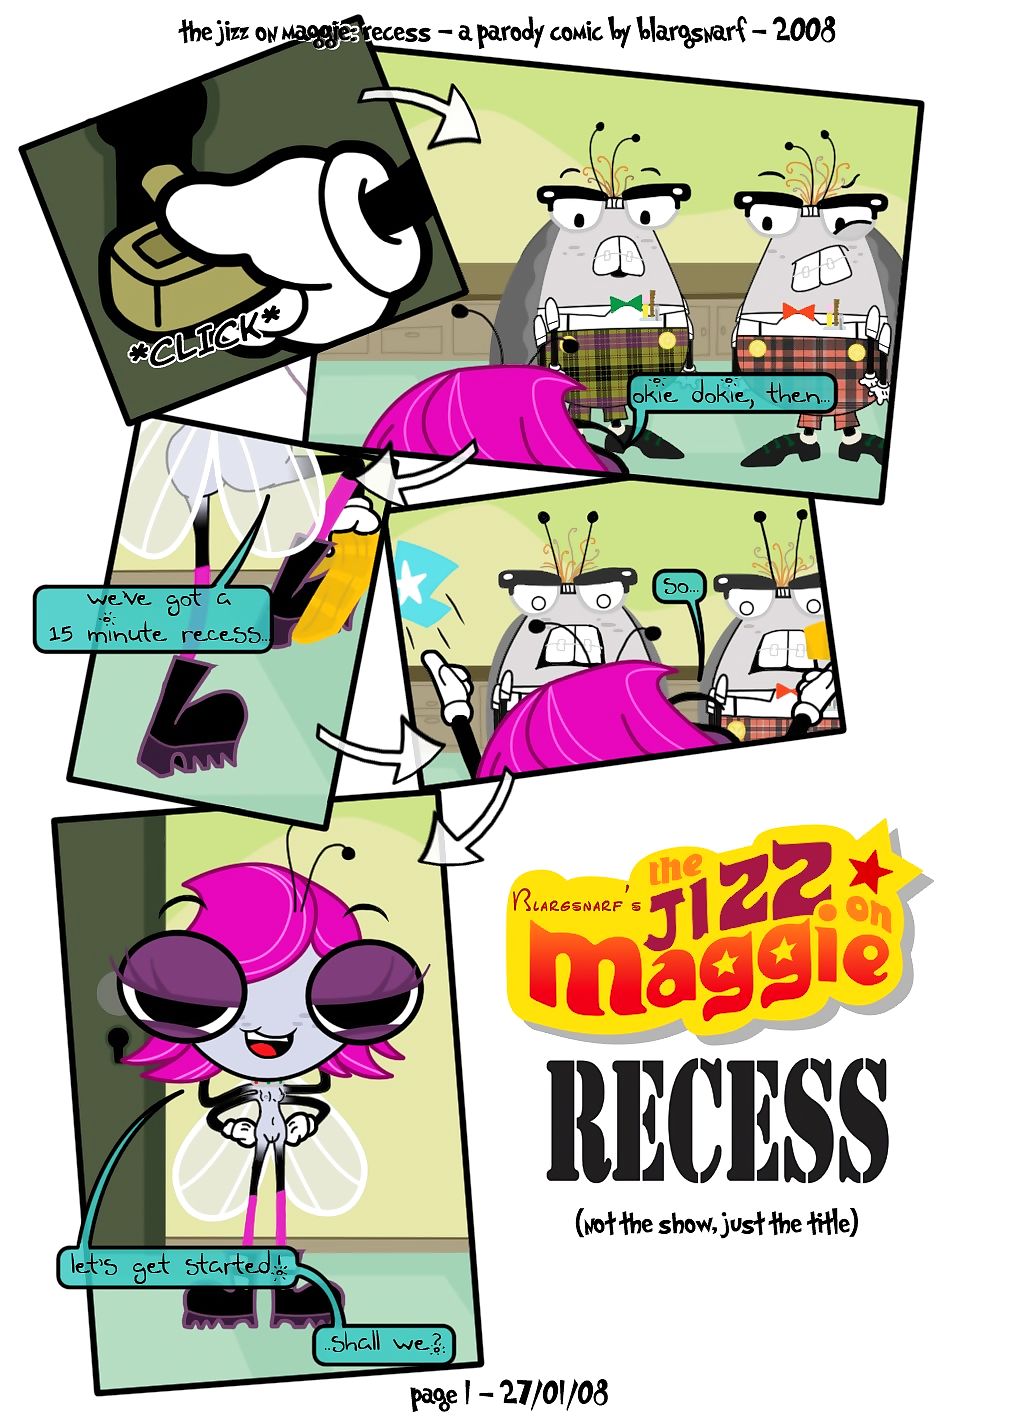 il buzz su Maggie page 1